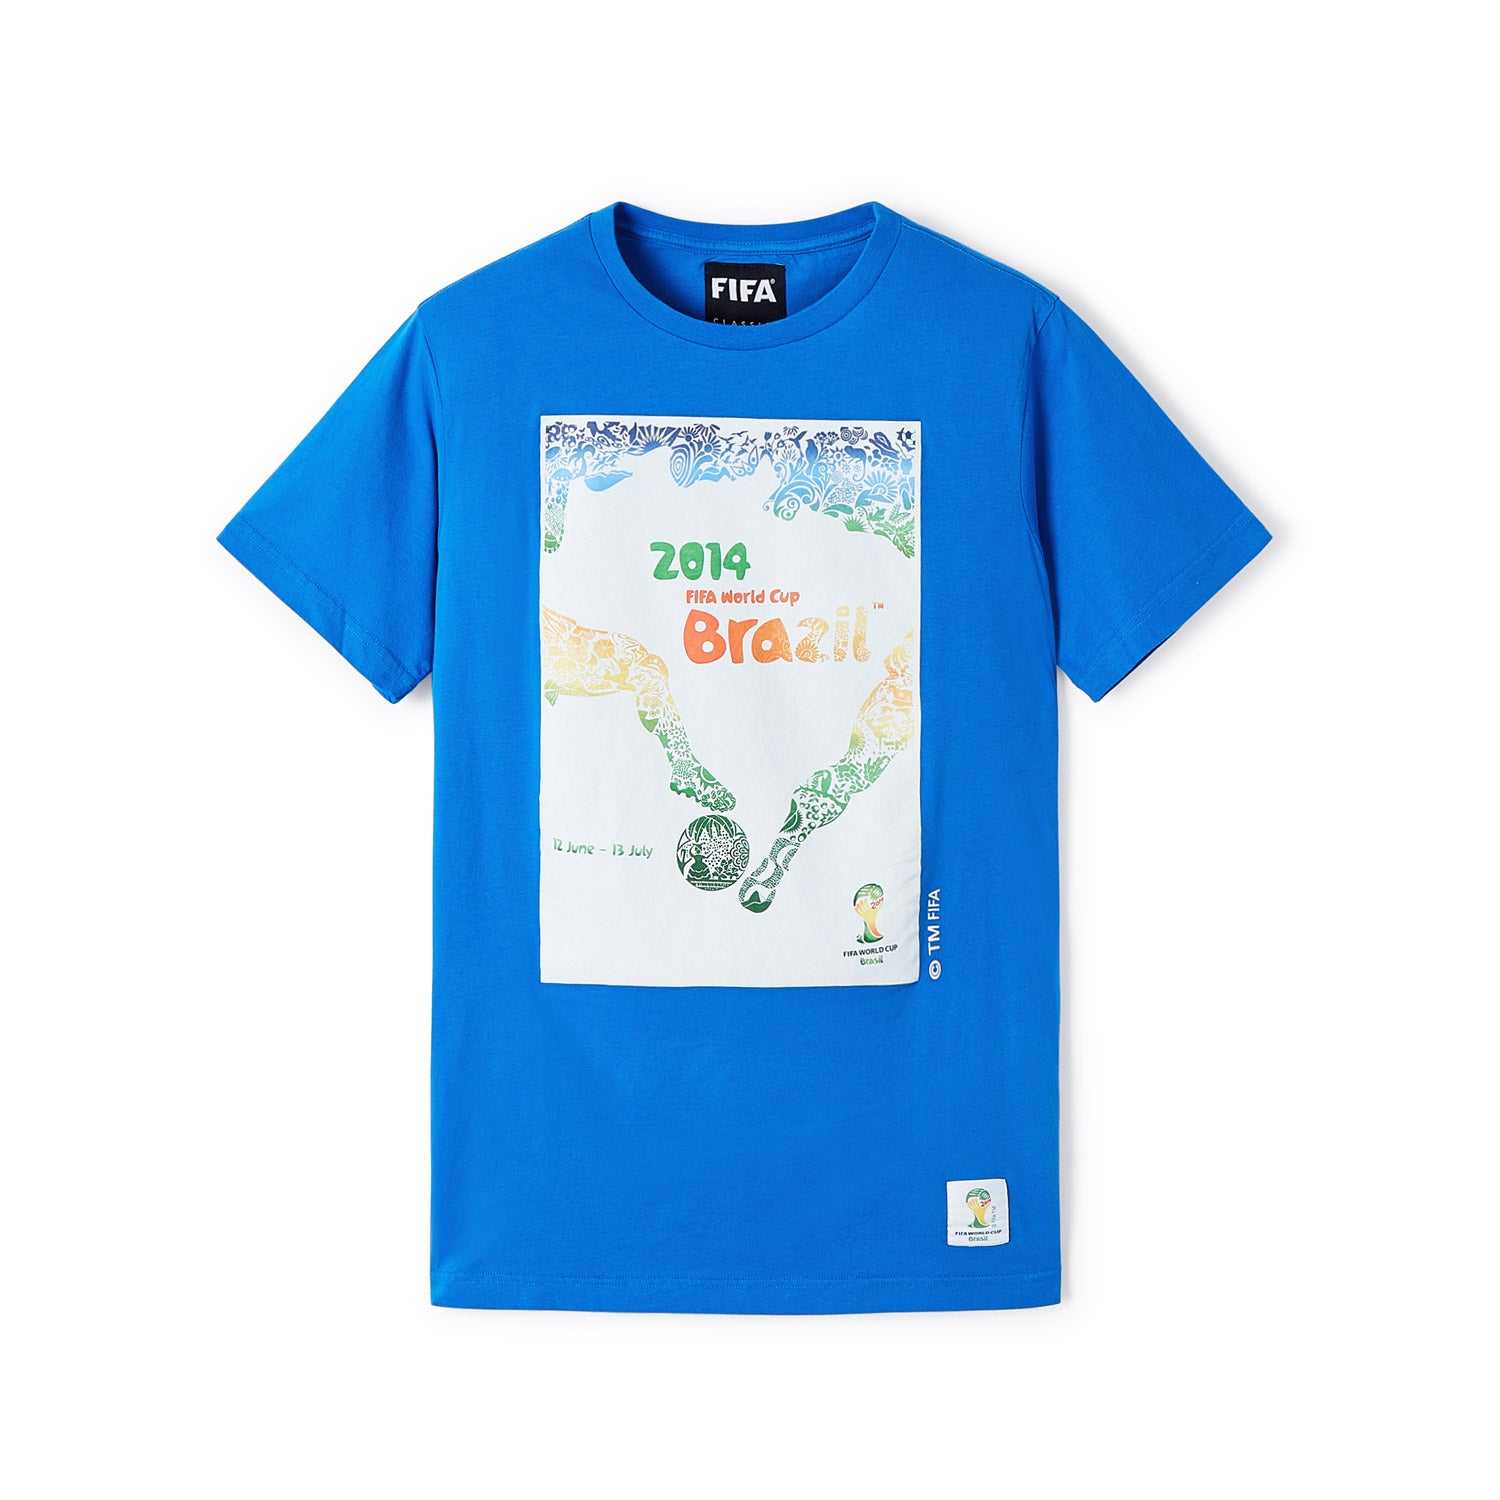 FIFA Rewind 2014 World Cup Poster T-Shirt